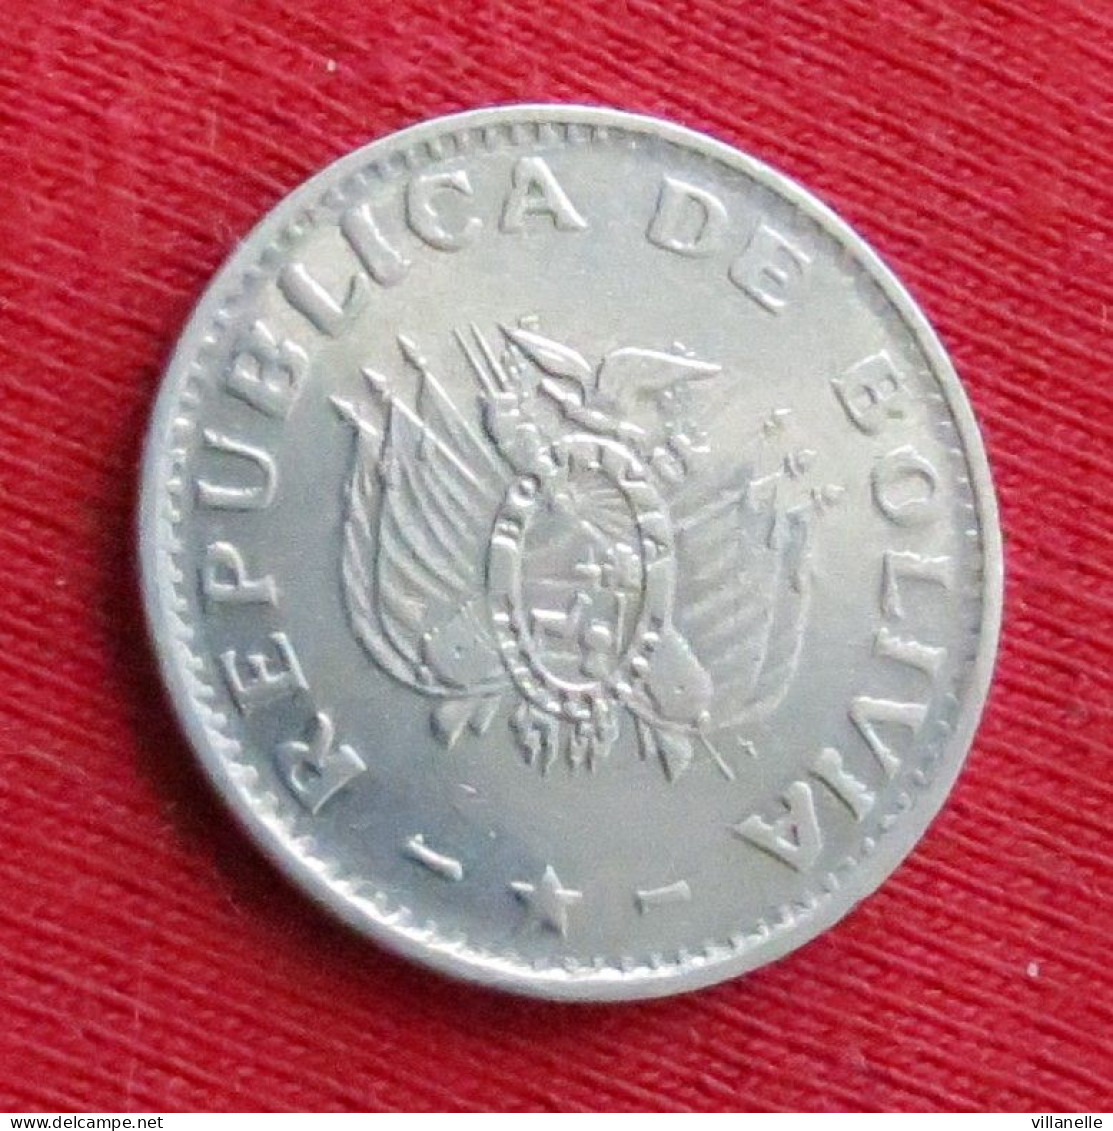 Bolivia 10 centavos 1995 Bolivie W ºº